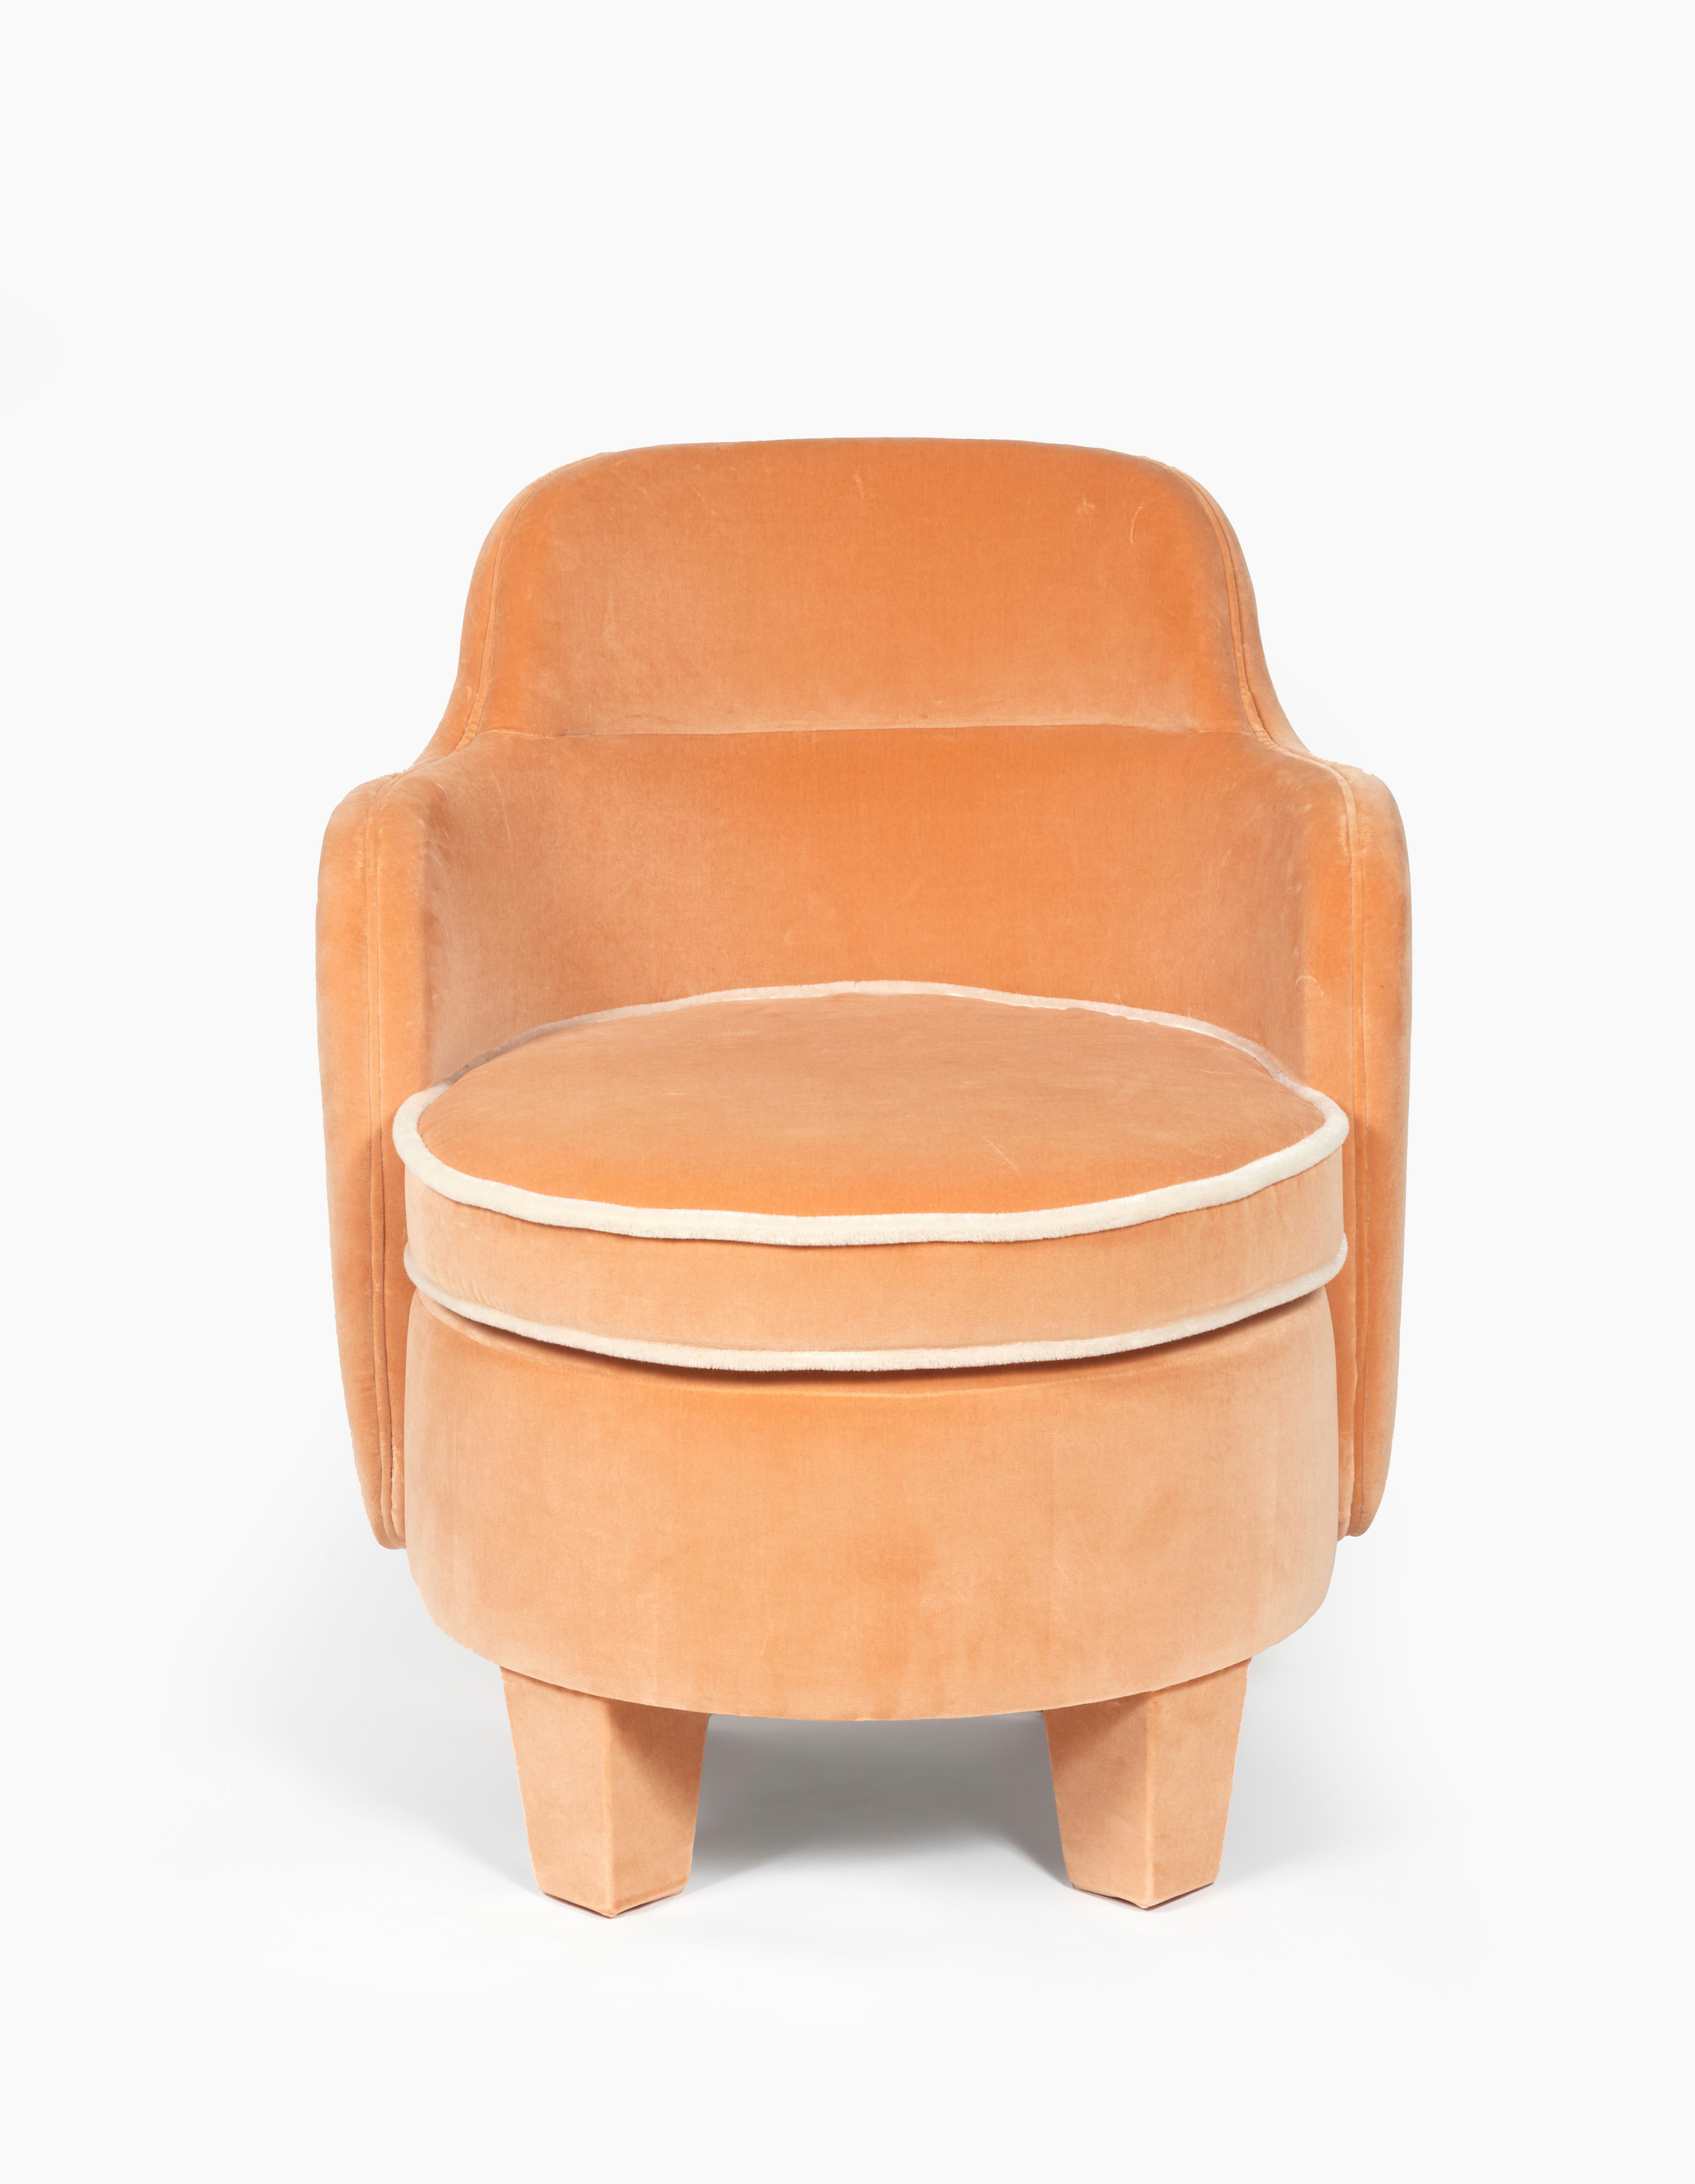 Der Sessel Baba wurde für ein Wohnprojekt in Paris entworfen und konzipiert. 
Sein ikonisches Design wurde von den floralen Formen der Möbel der 70er Jahre inspiriert.
Die Größe dieses Stücks passt perfekt zu einem kleinen Bereich wie den Winkeln